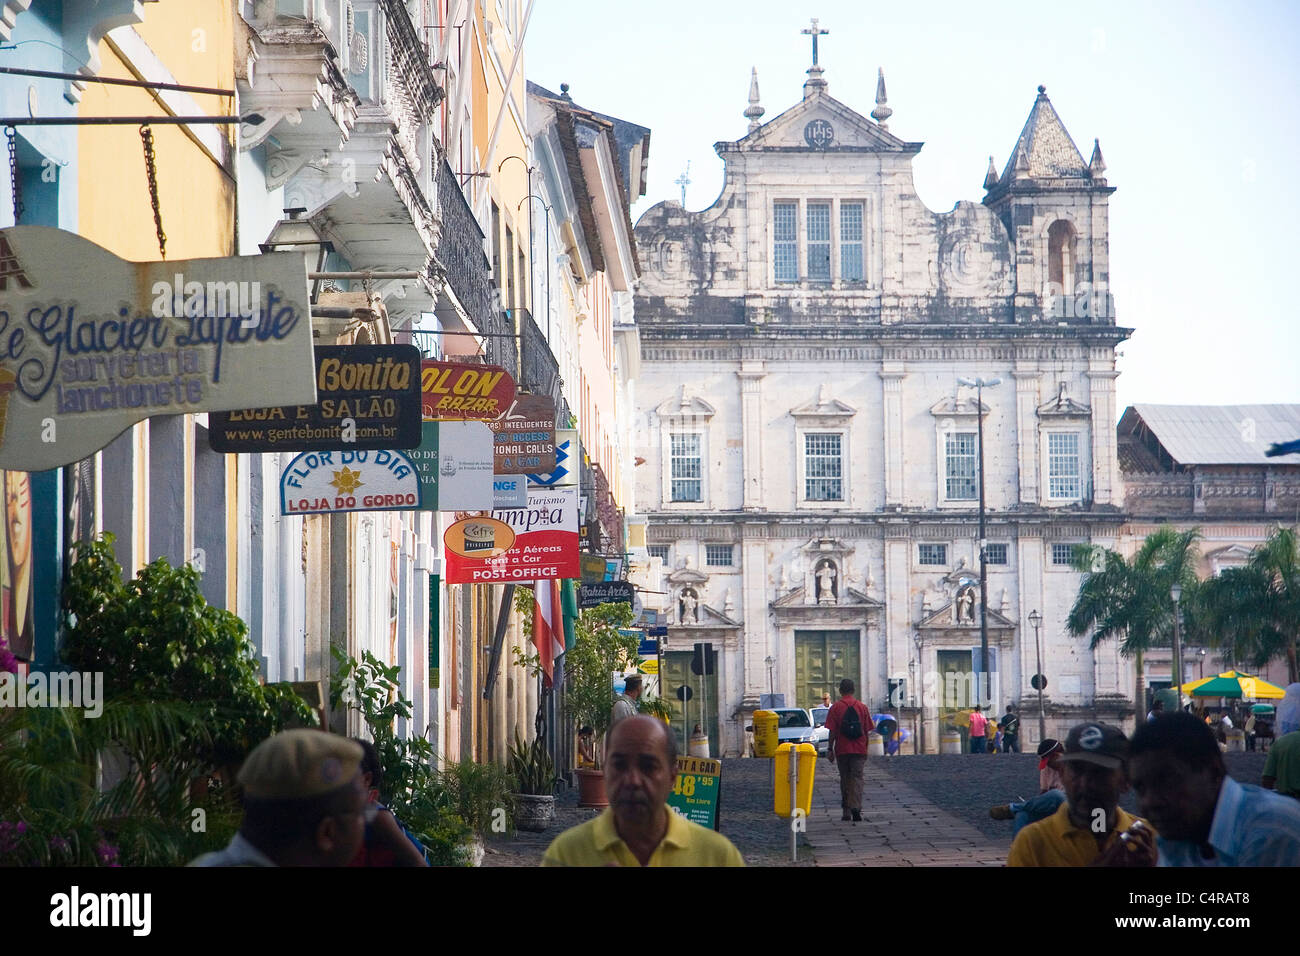 Pelhourino, the old city center of Salvador, Brazil Stock Photo